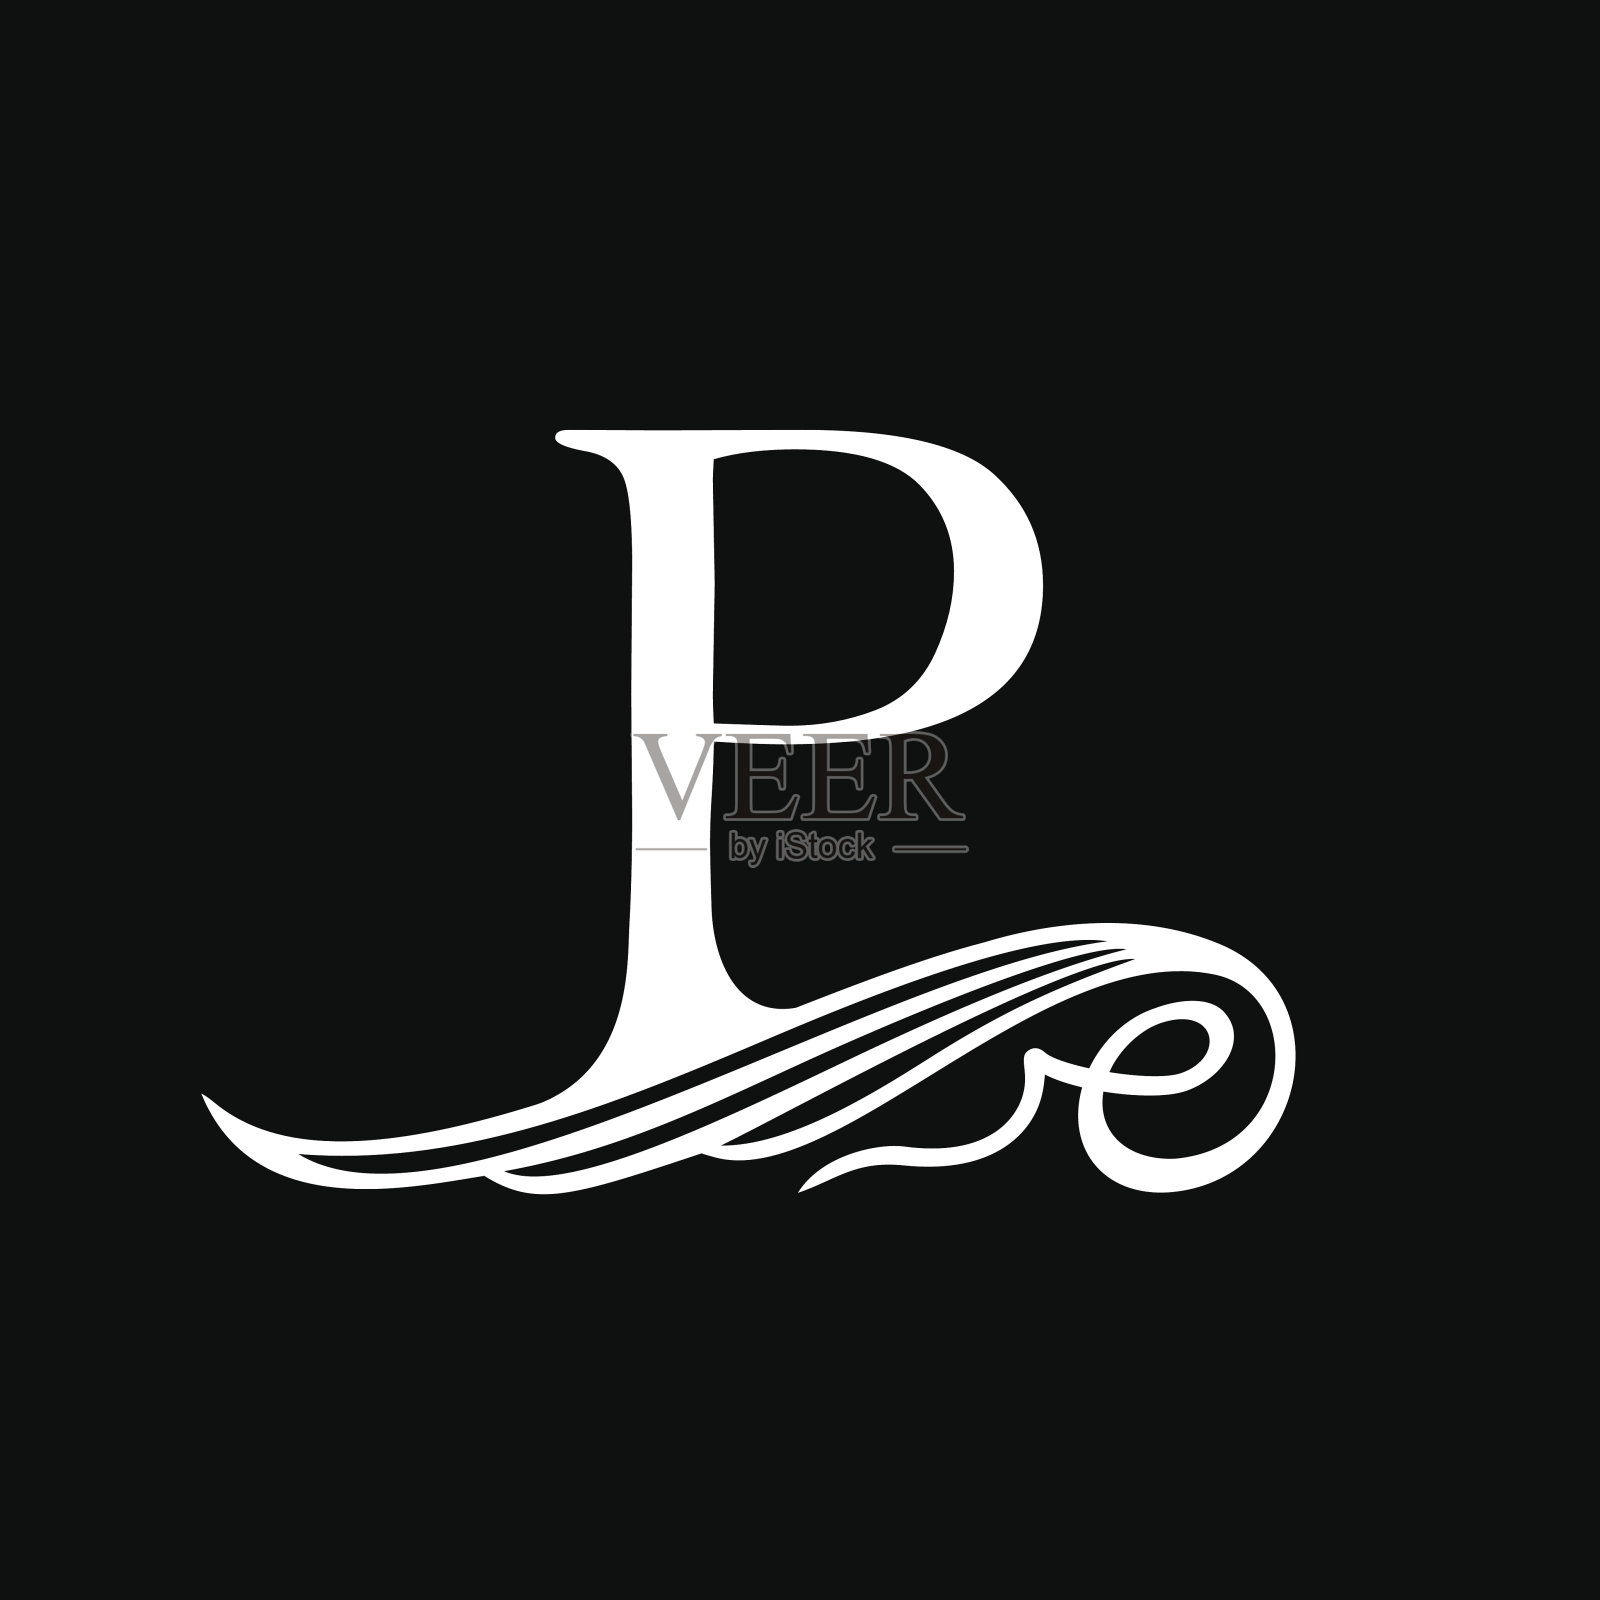 大写字母P代表字母组合、标志和标志。美丽的饰品设计元素图片